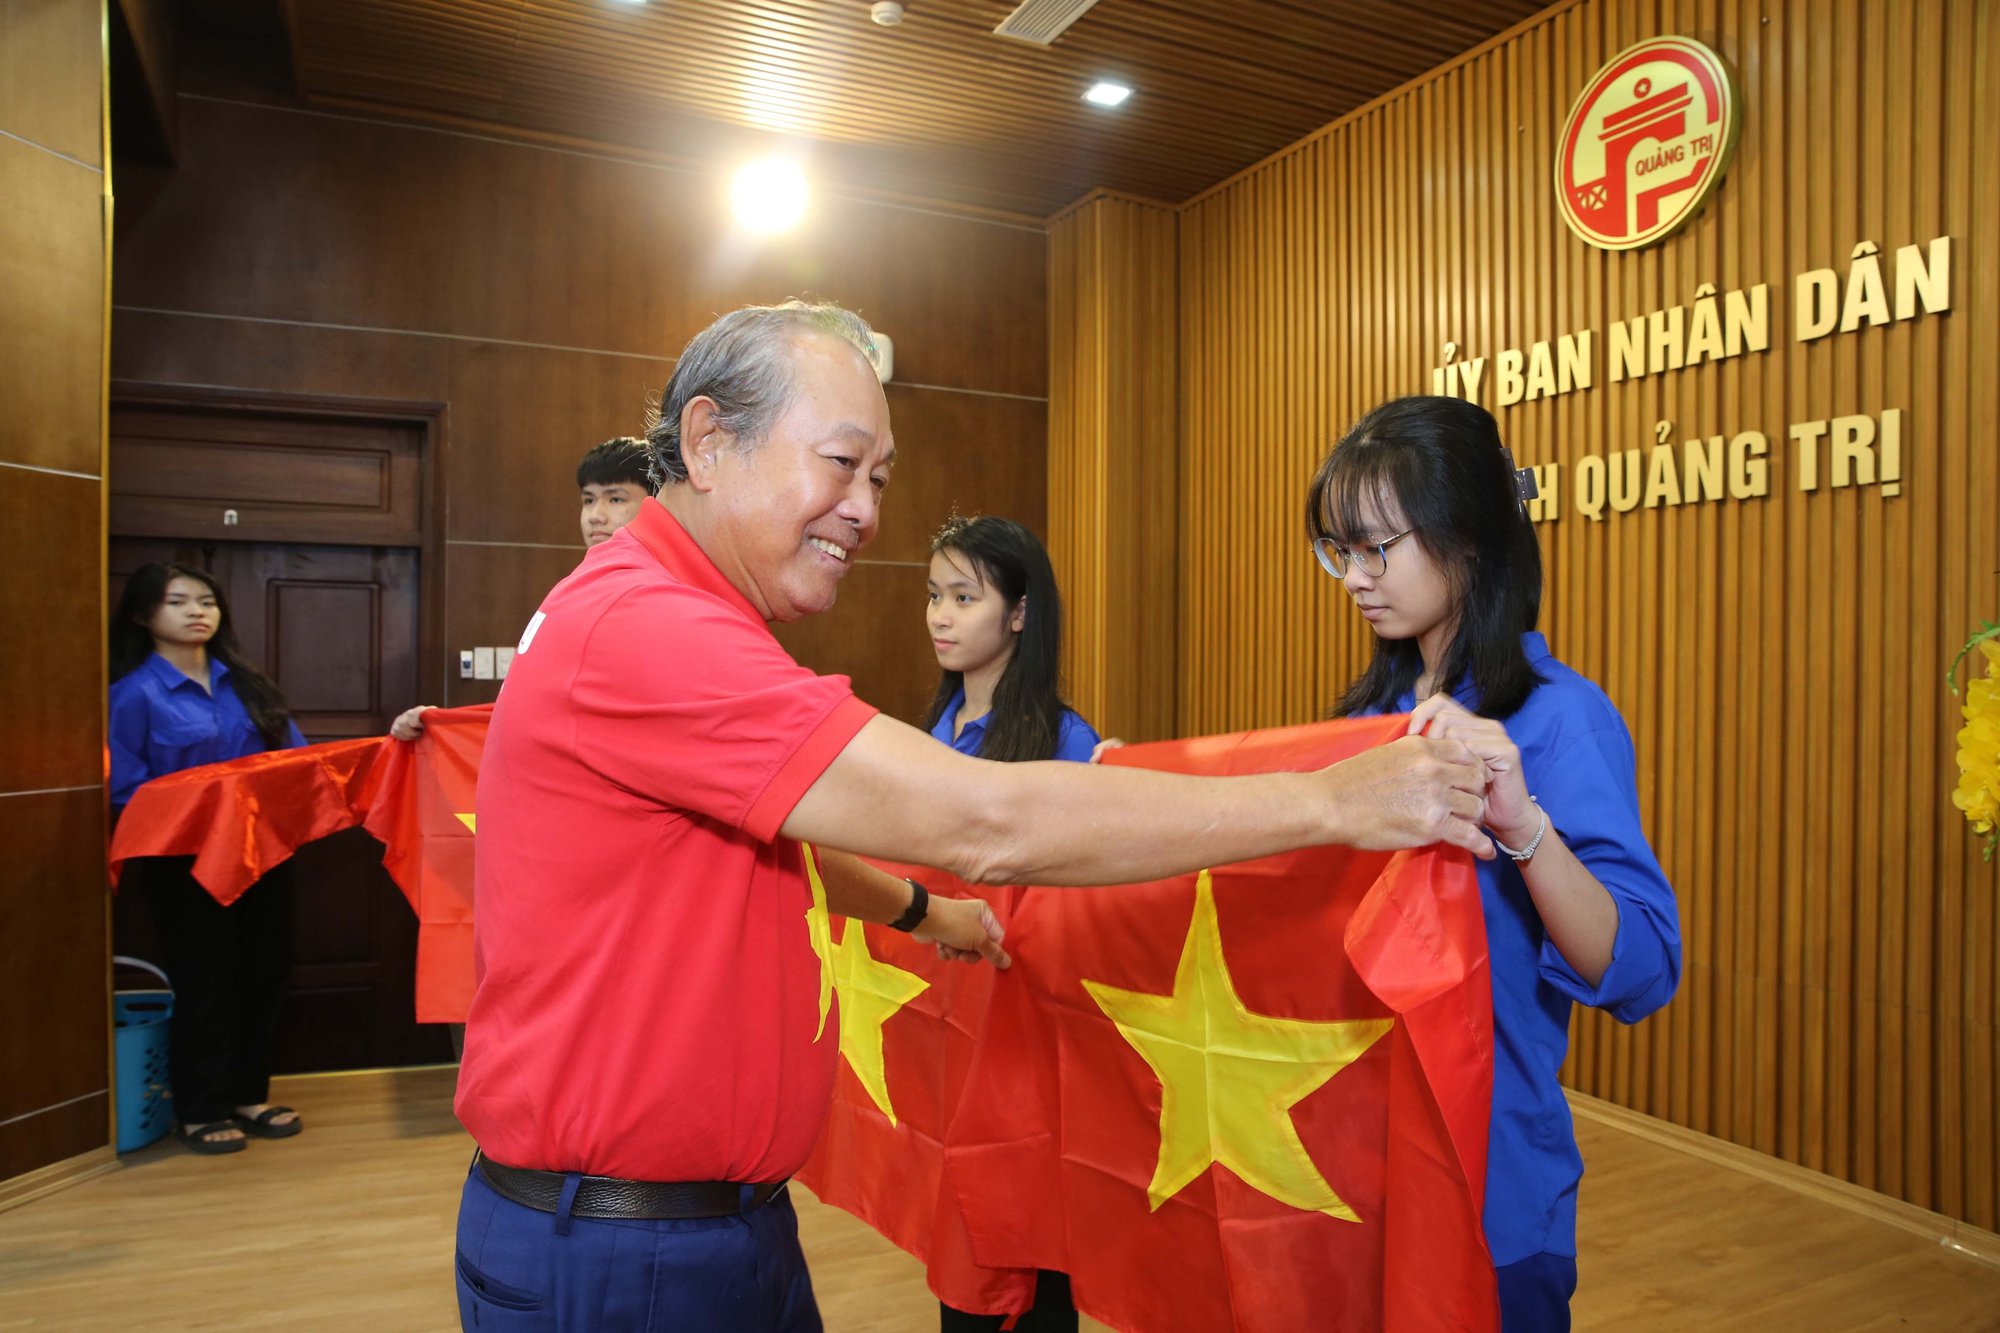 Báo Người Lao Động tổ chức nhiều chương trình ý nghĩa tại Quảng Trị - Ảnh 4.